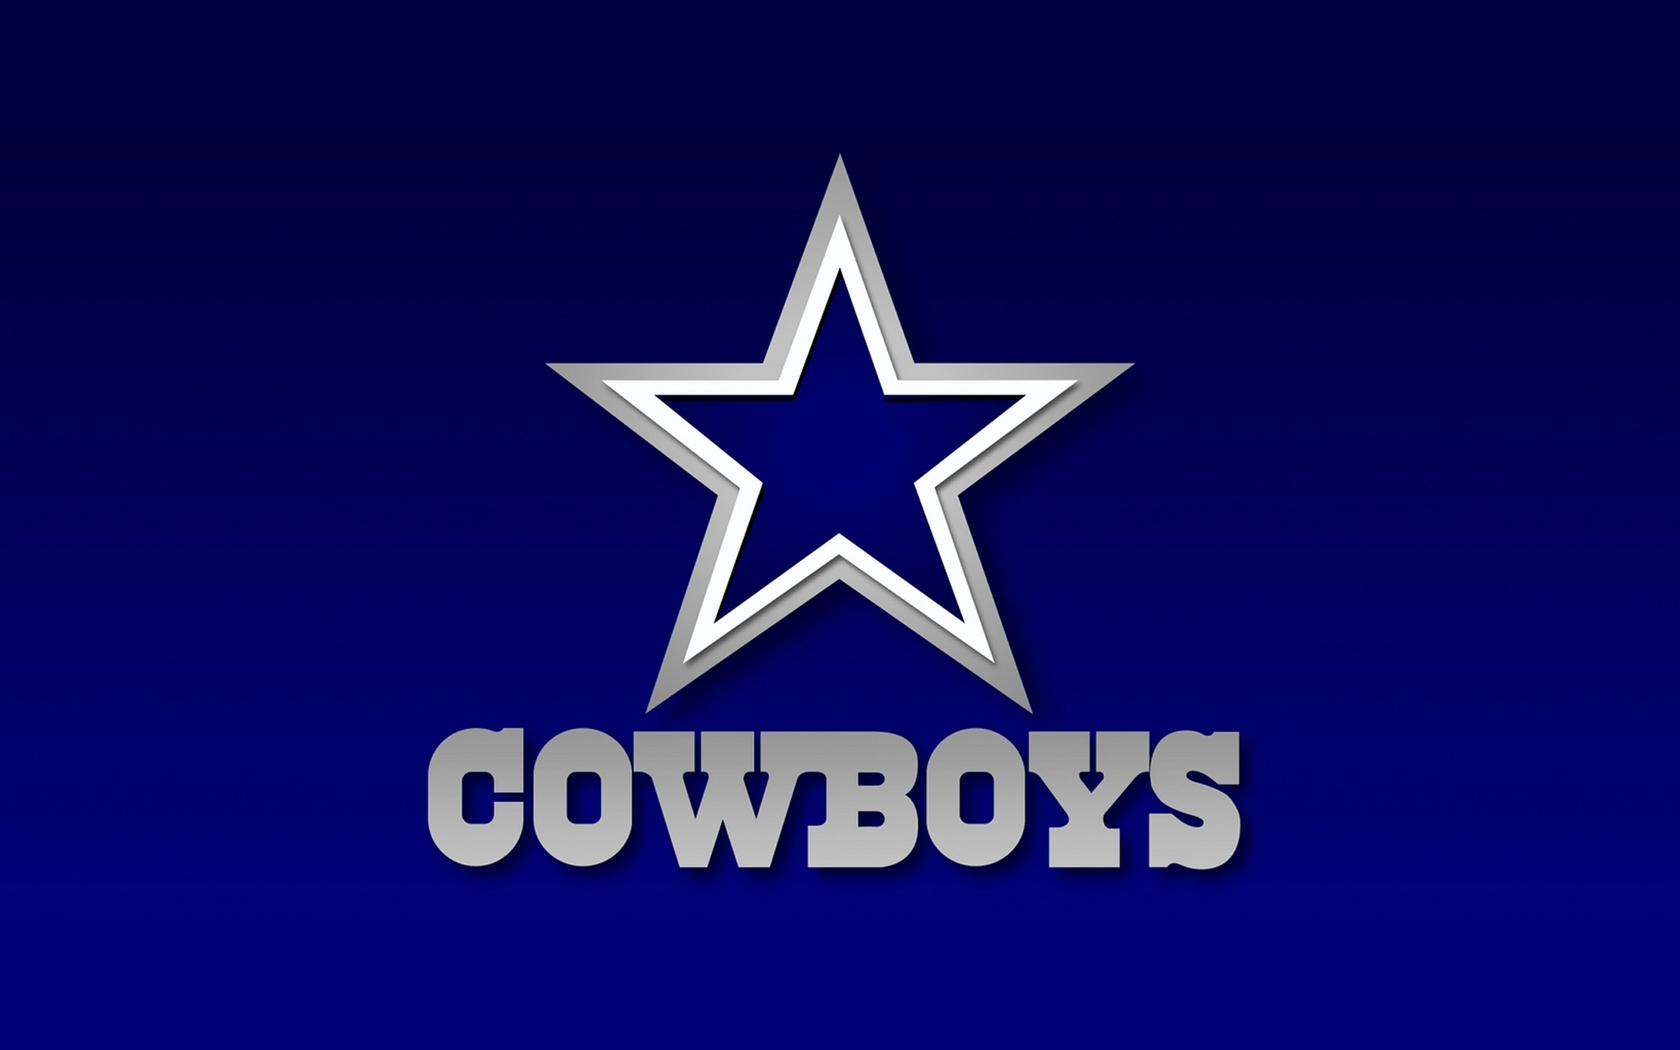 Dallas Cowboys background image